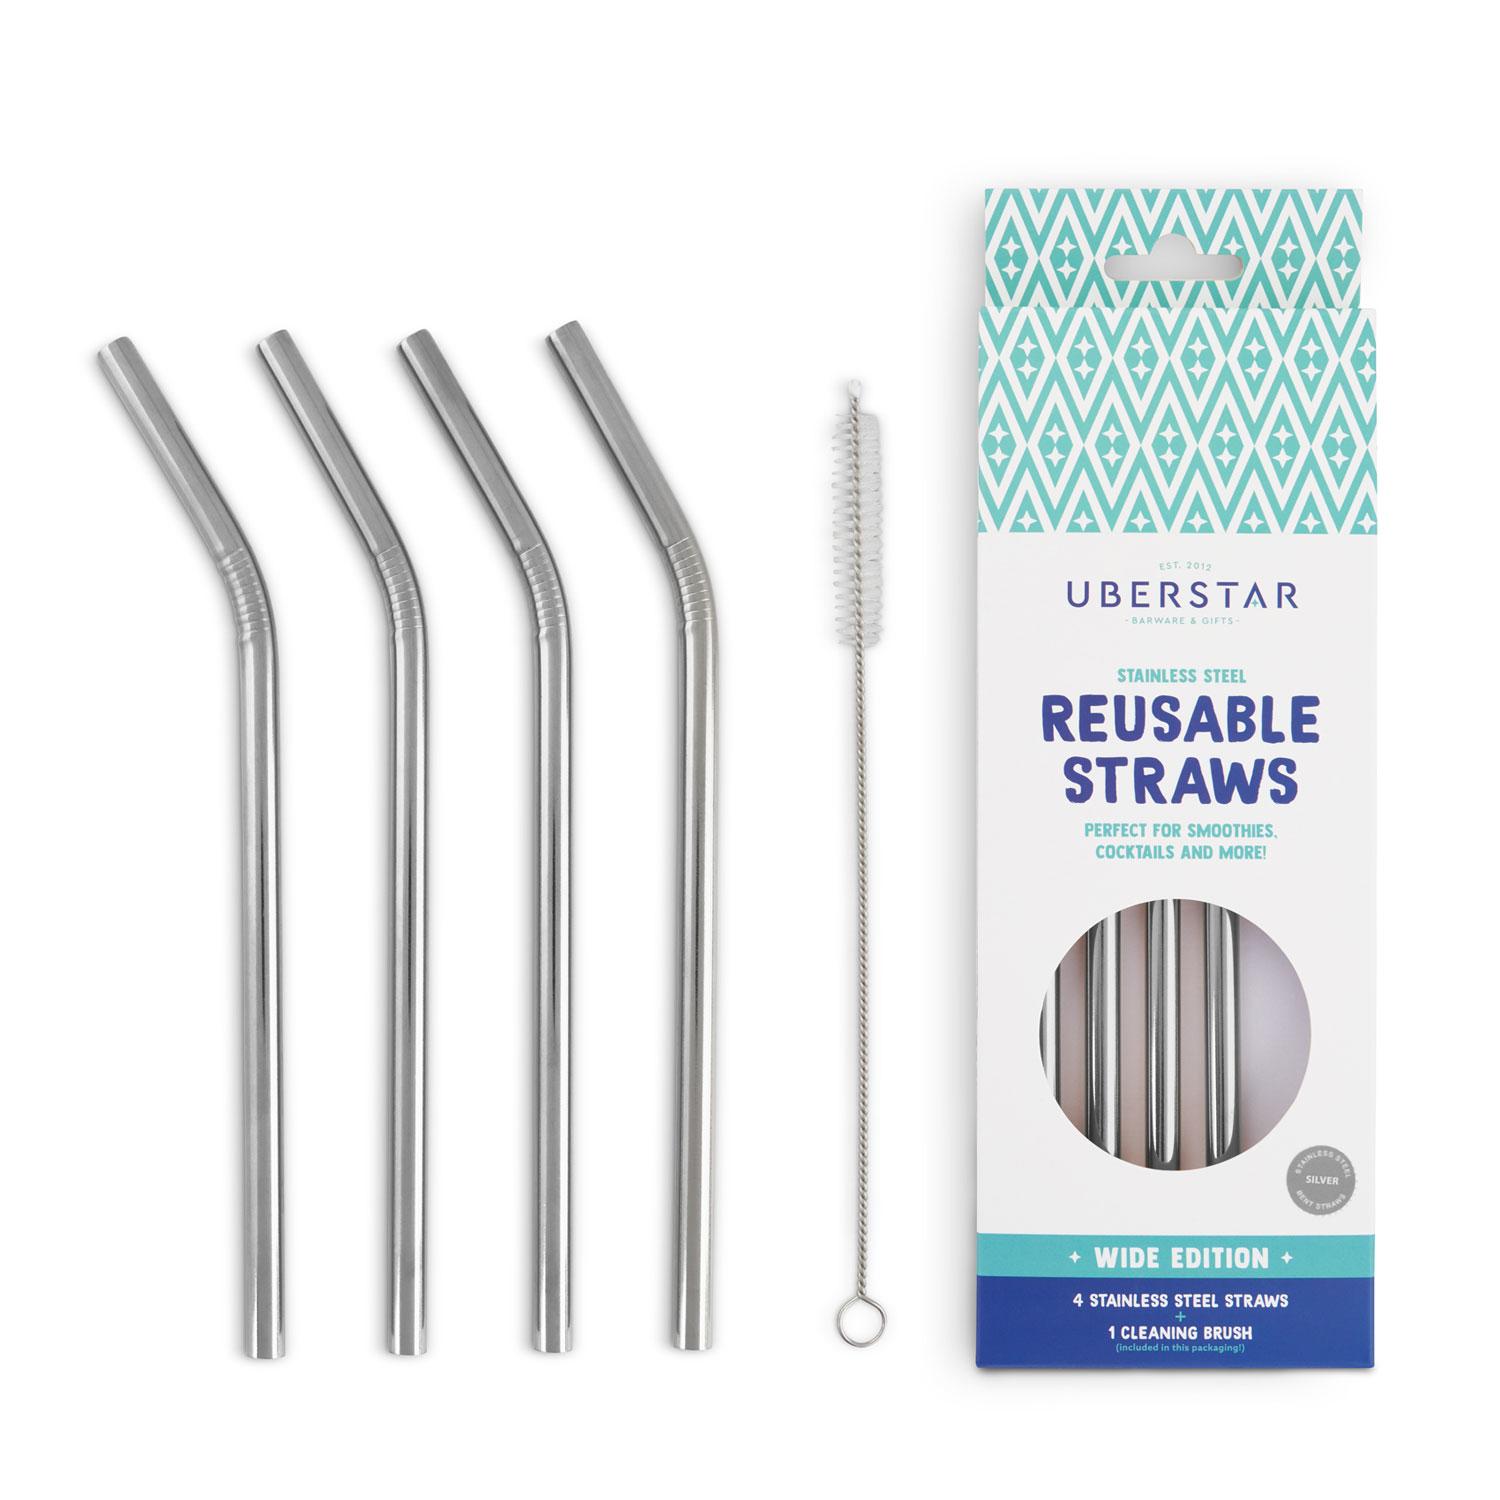 Uberstar Reusable Stainless Steel Straws (4 Pack)